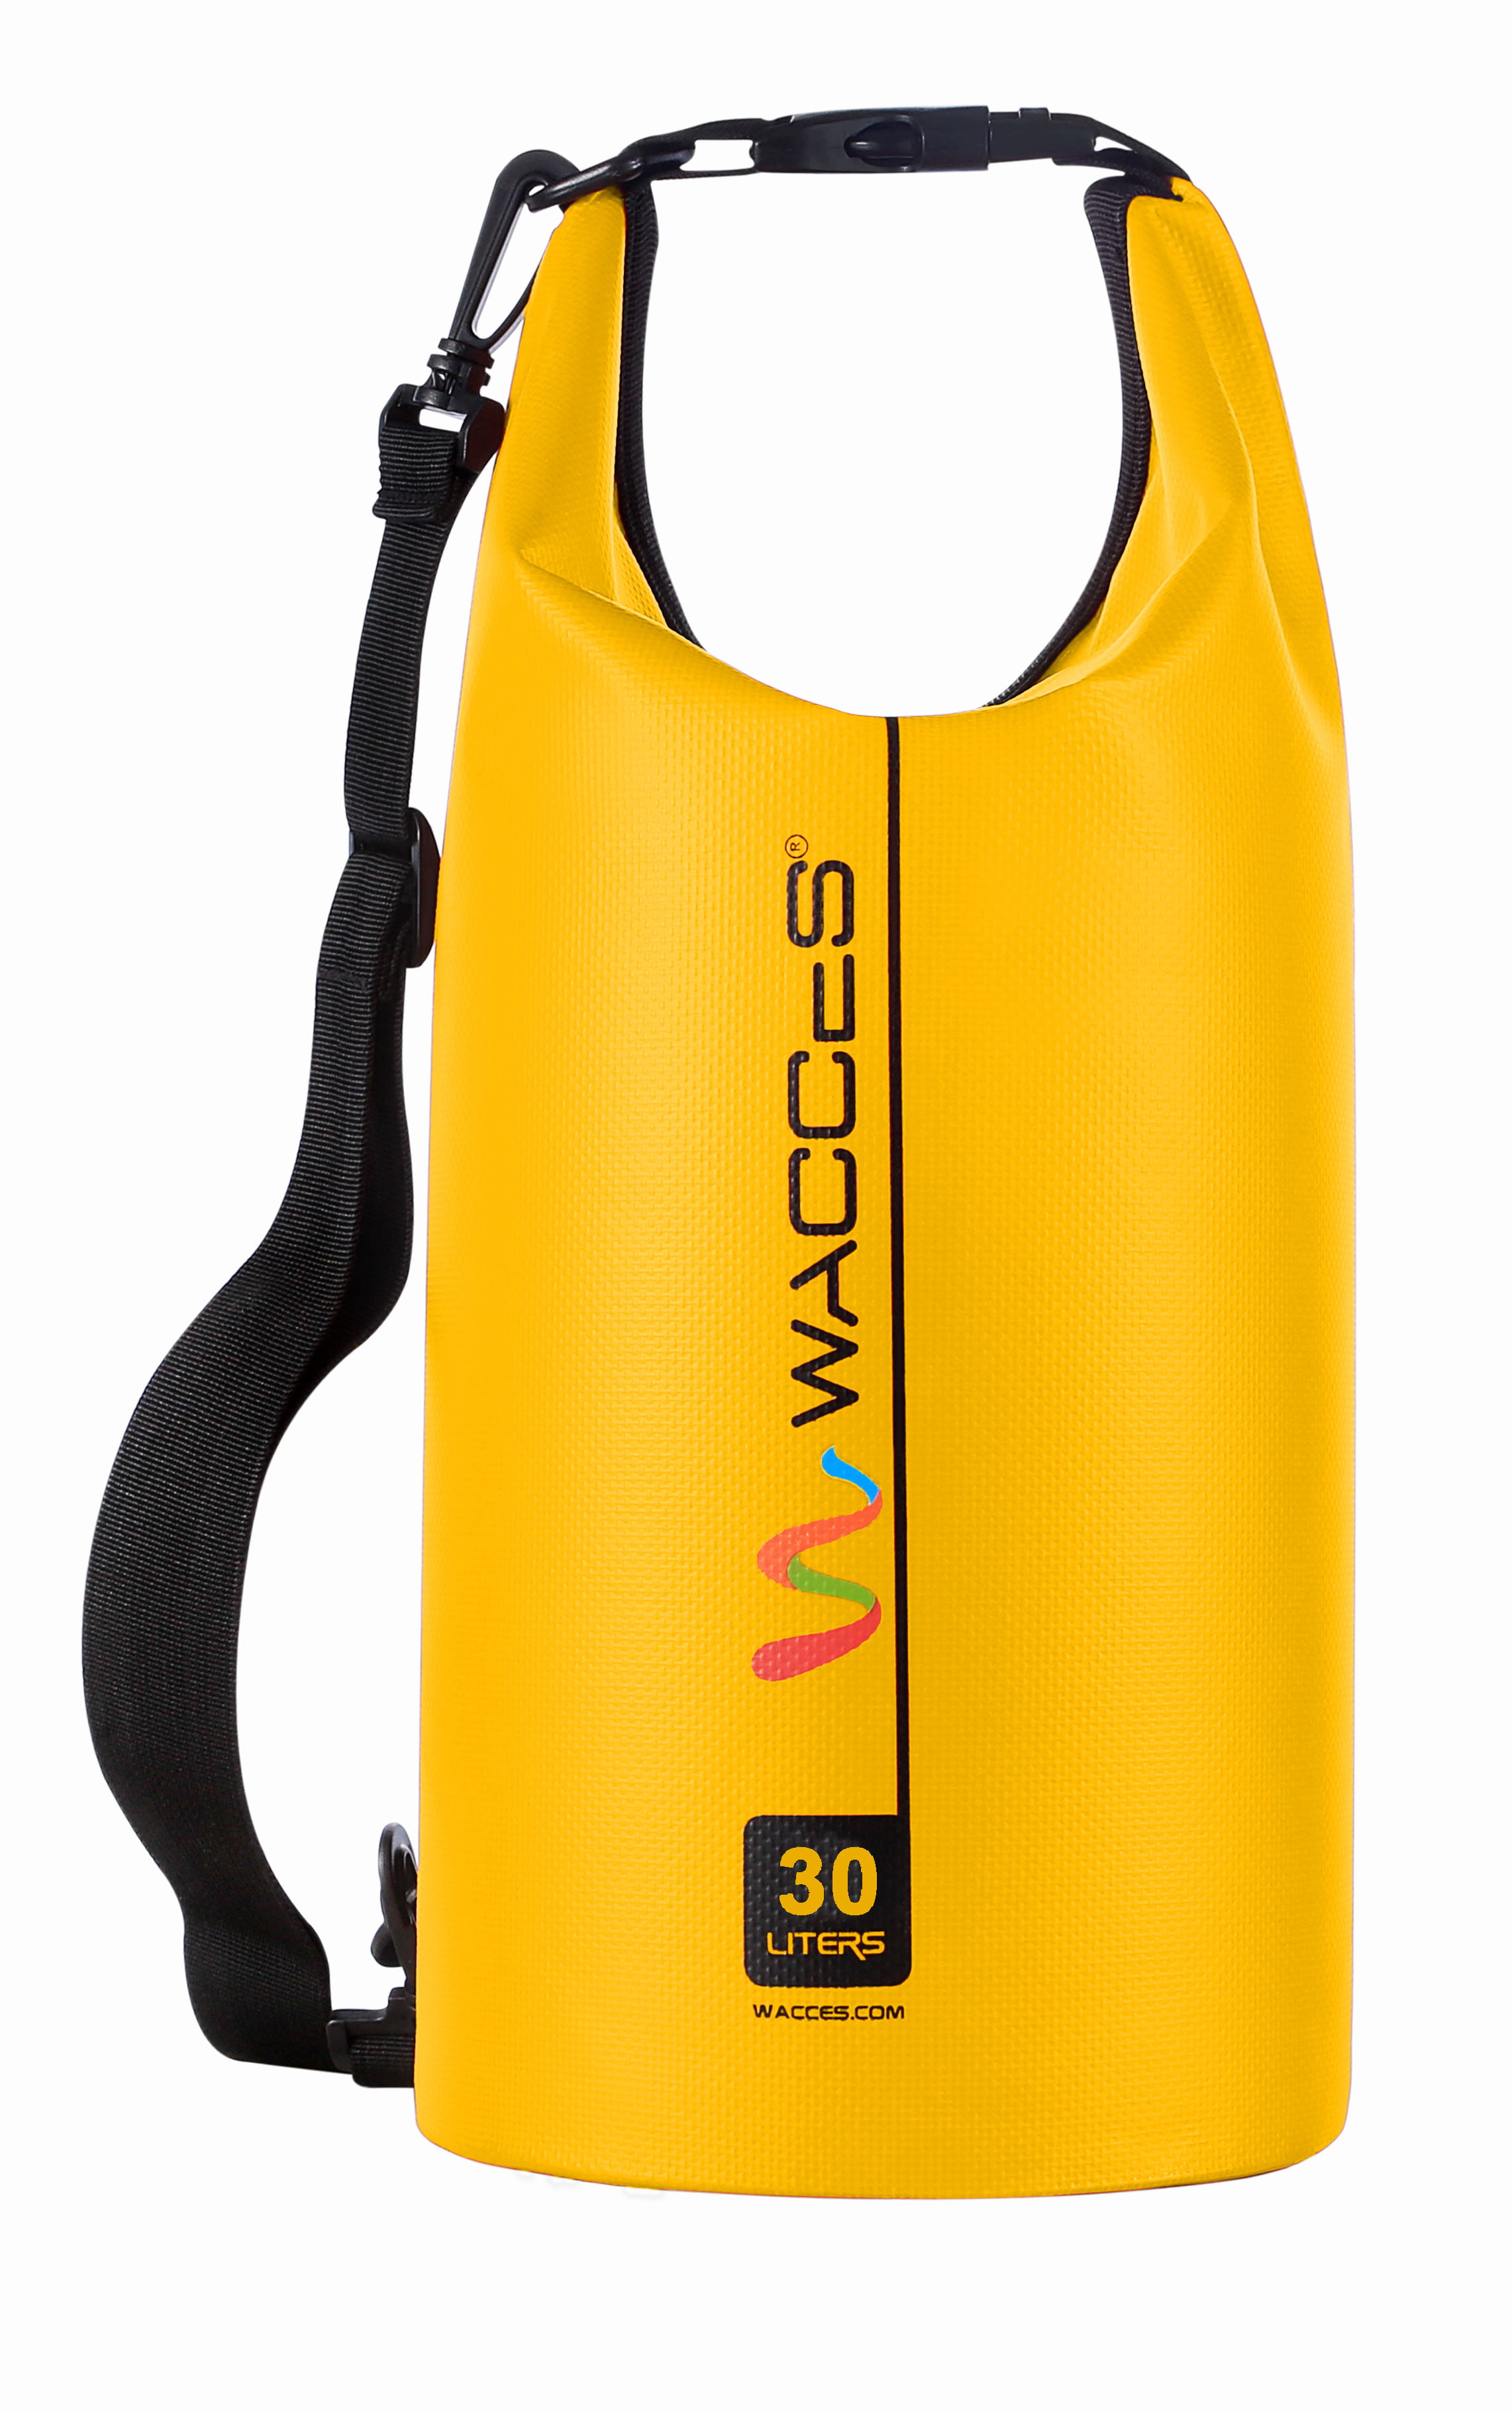 Waterproof OUTDOOR GEAR HEAVY DUTY Boating Kayaking Camping Dry Bag 30 liter org 